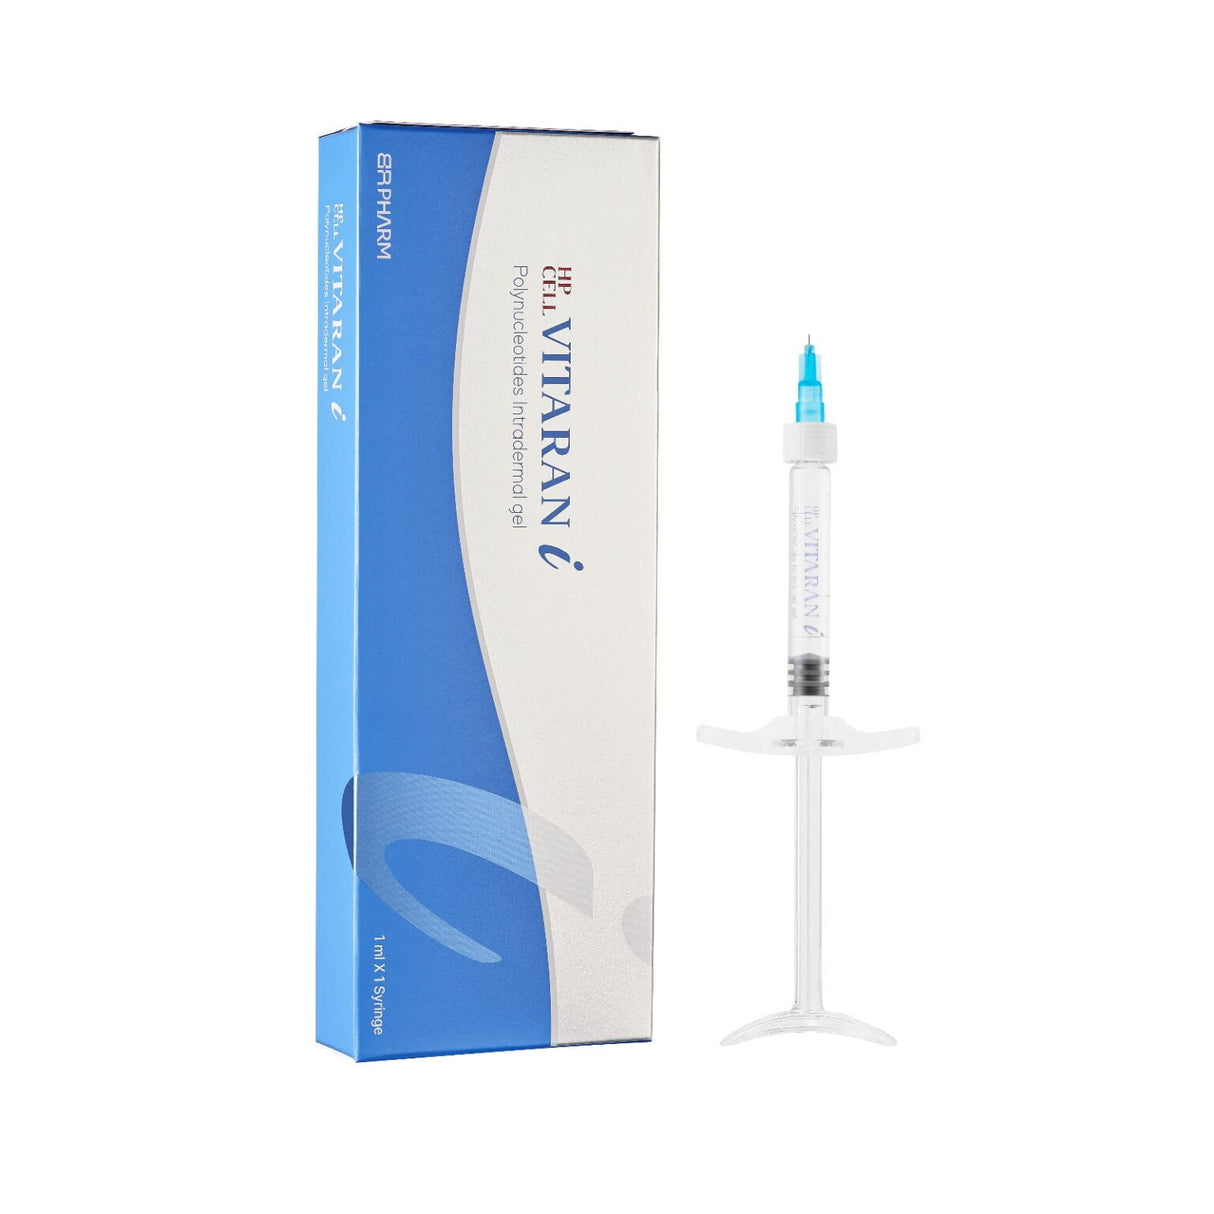 VITARAN I (1ml x 1 Syringe